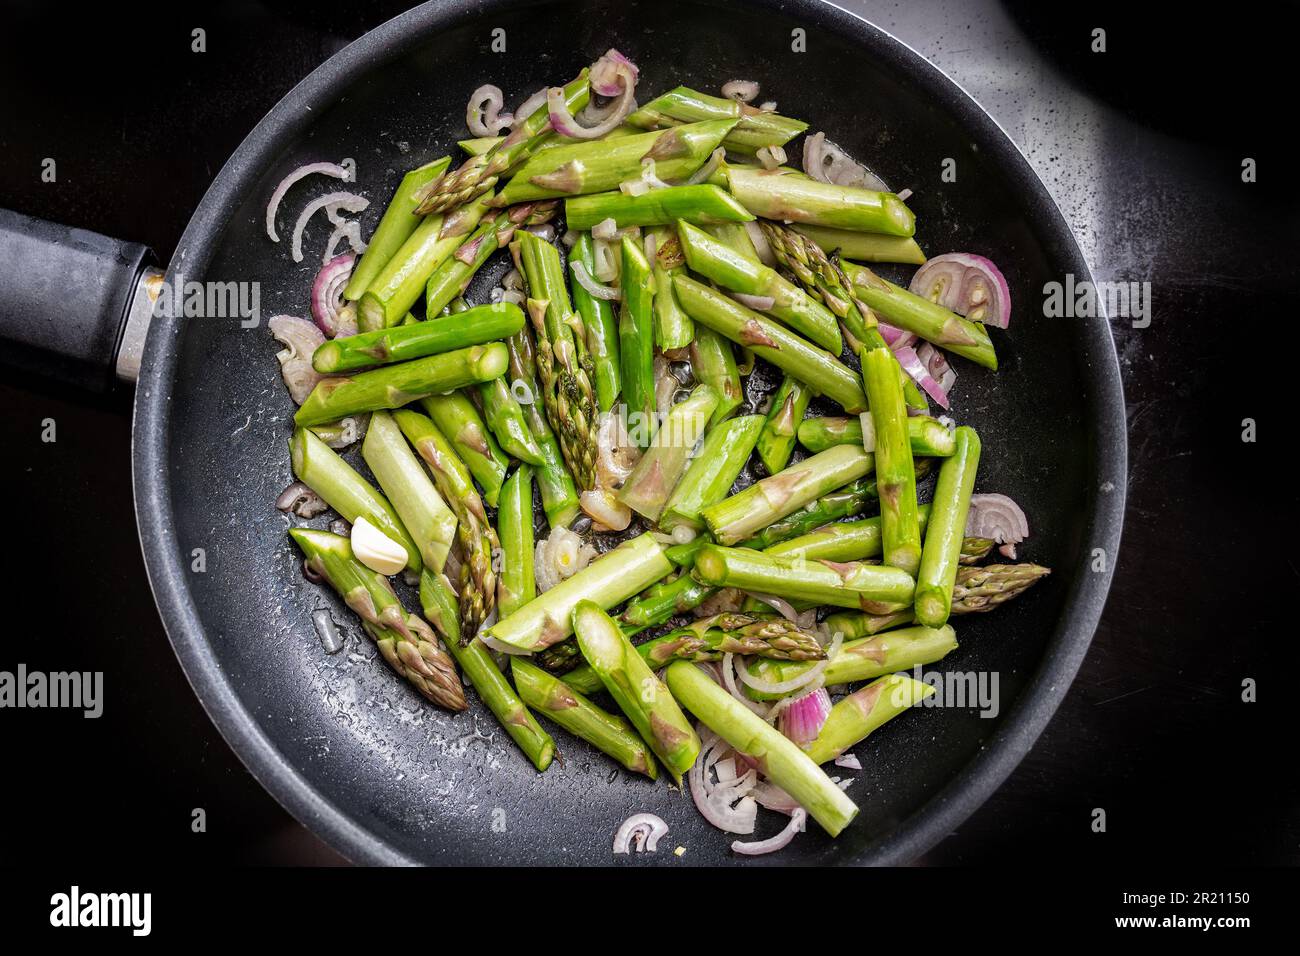 Asperges vertes et oignons rouges dans une poêle sur le dessus de la cuisinière noire, la cuisson d'un repas végétarien sain avec des légumes de saison, vue en grand angle de Banque D'Images